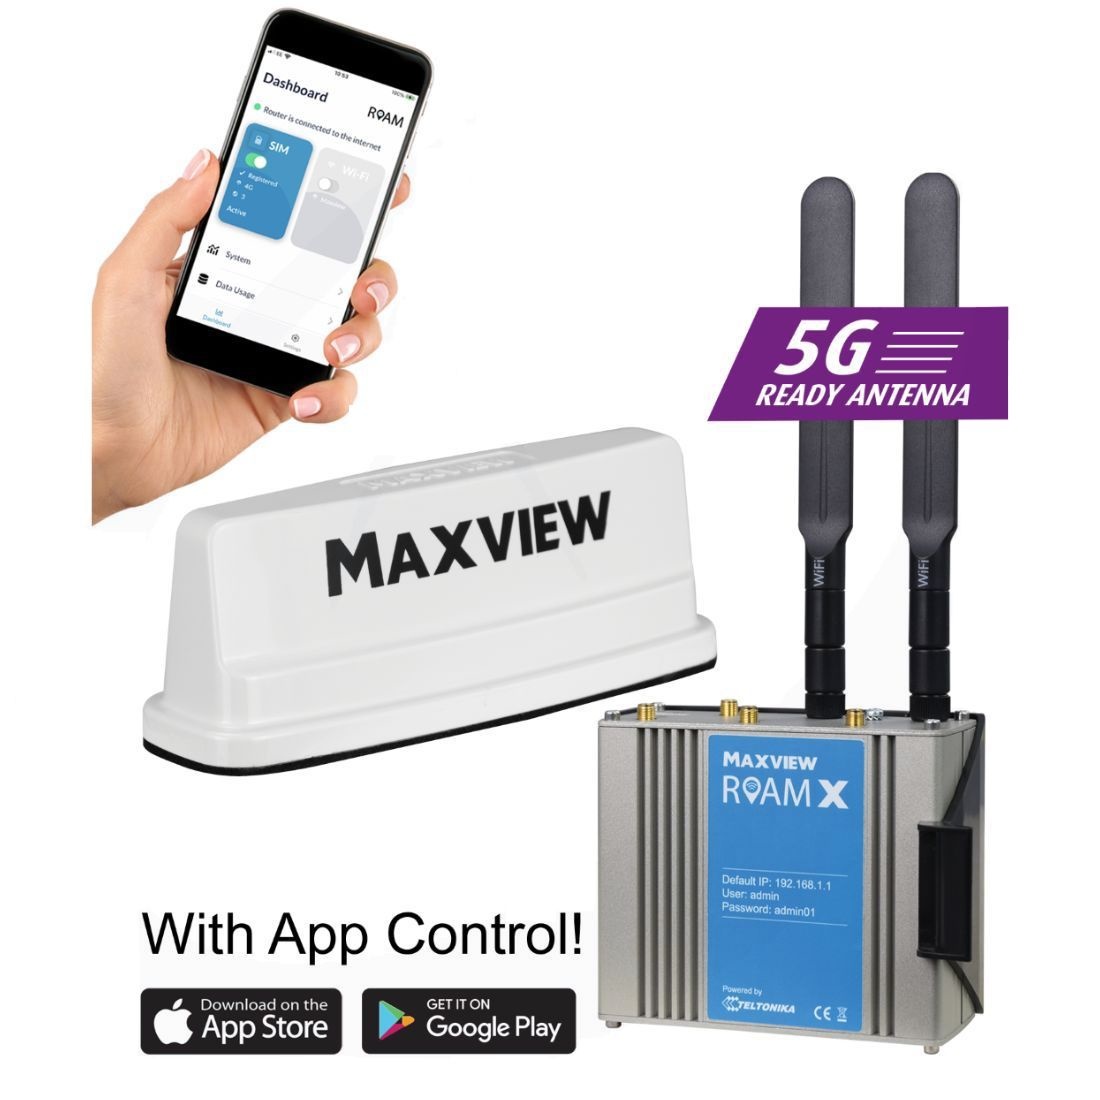 Maxview Roam X - mobiele 5G ready WiFi oplossing - Satelliet winkel  CardWriter